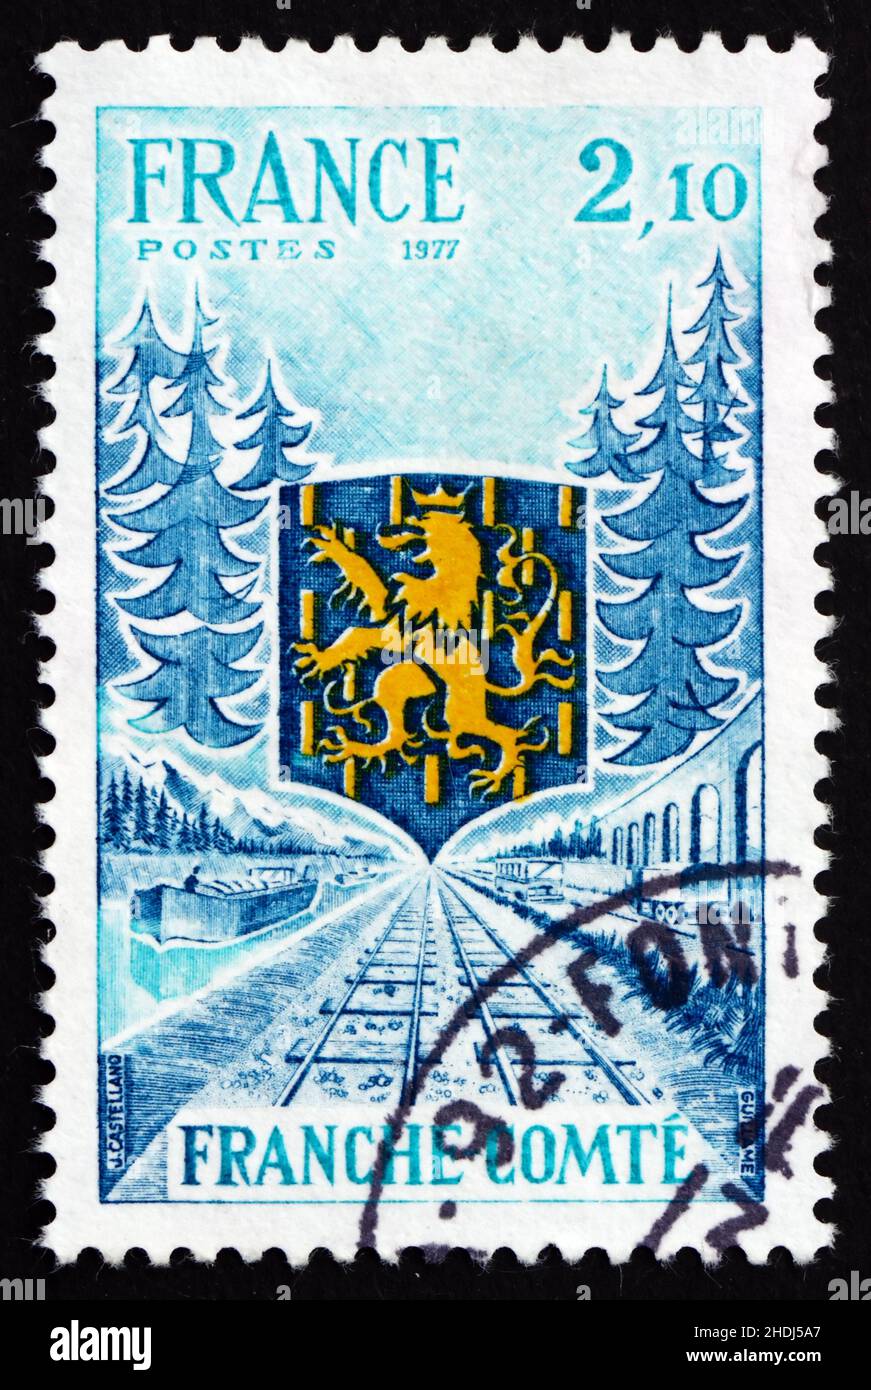 FRANCE - VERS 1977 : un timbre imprimé en France montre Franche-Comté, région de France, l'ancien comté libre de Bourgogne, vers 1977 Banque D'Images